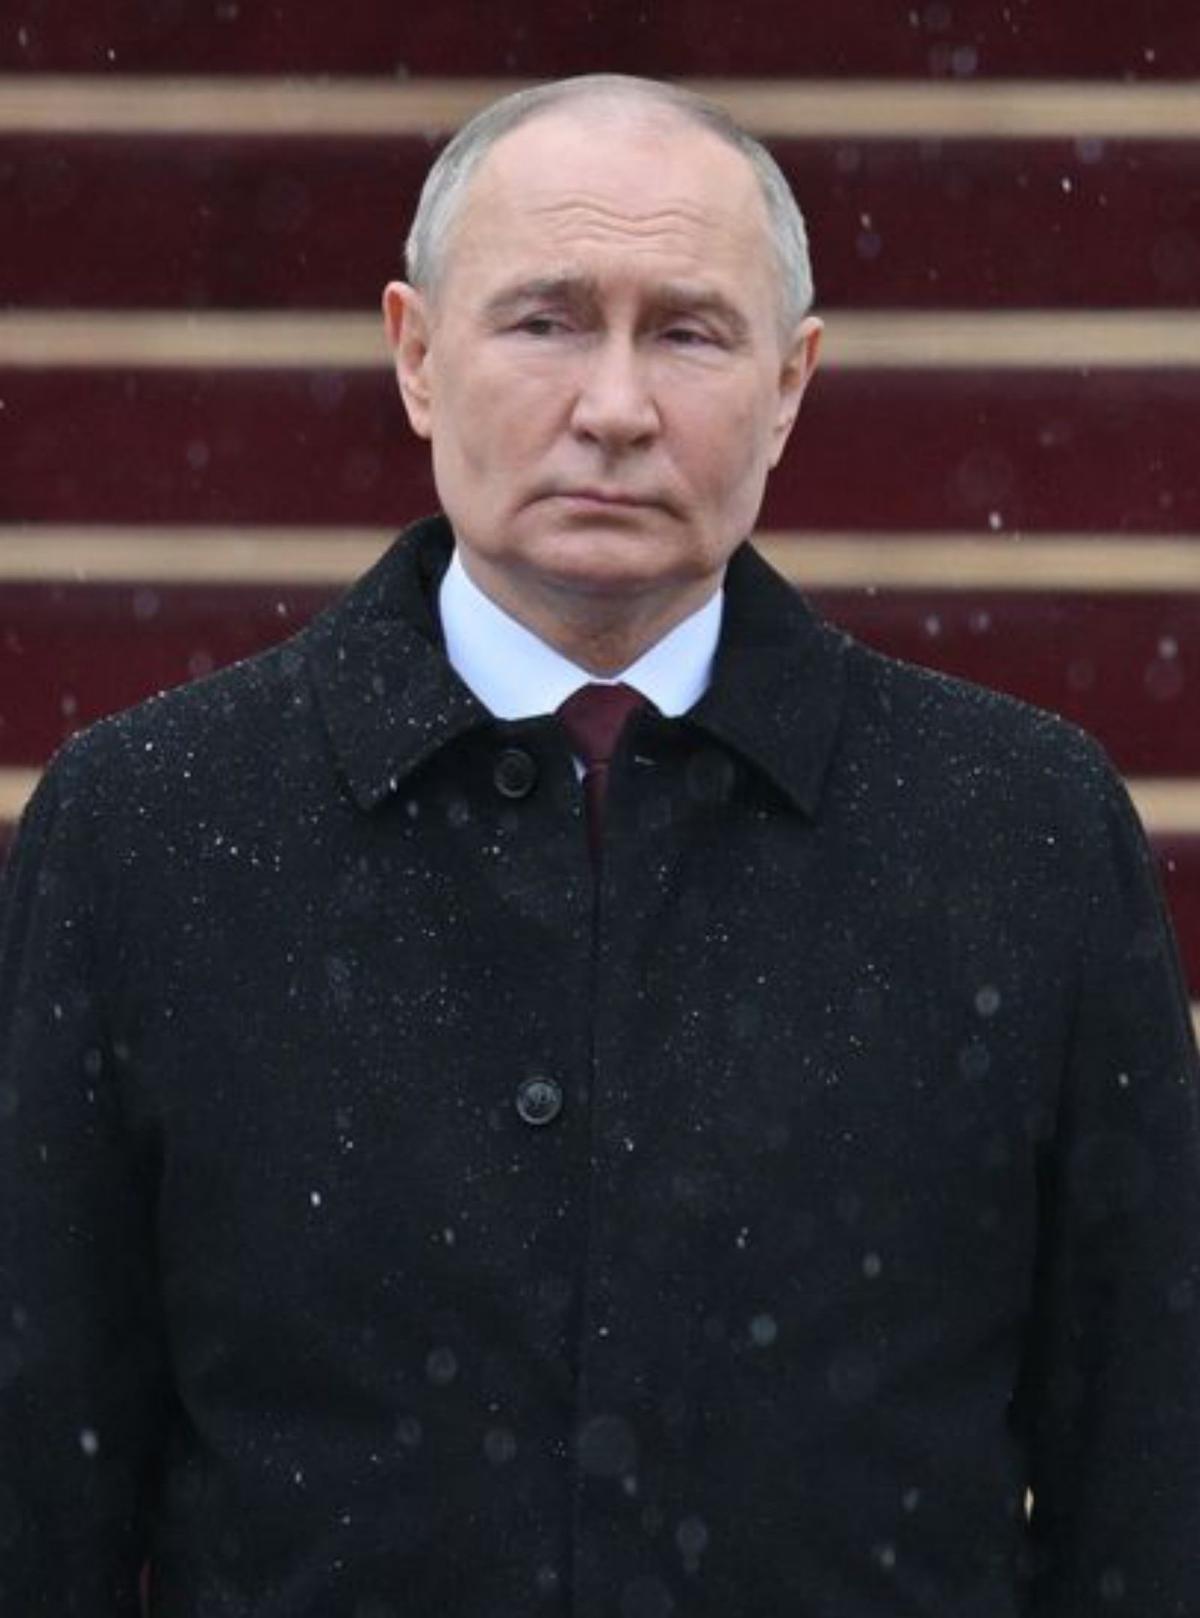 Putin promet la victòria de Rússia després de jurar el seu cinquè mandat